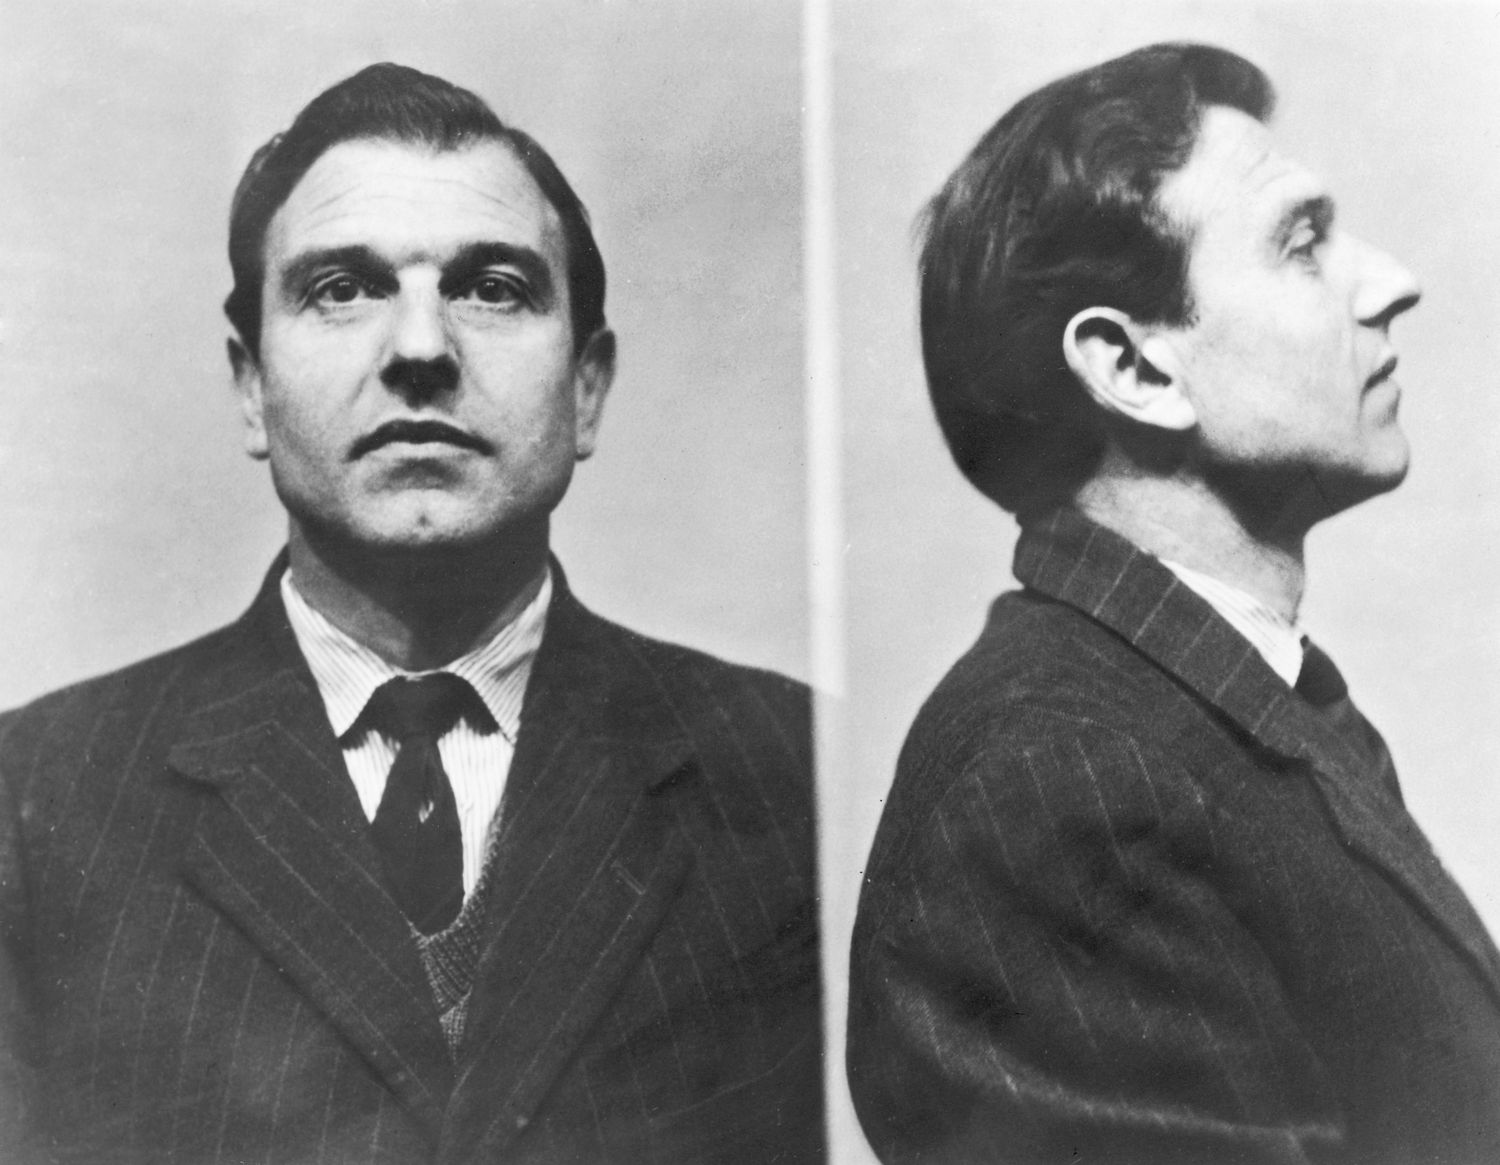 O agente duplo George Blake em fotos da prisão britânica de Wormwood Scrubs, onde passou cinco anos até fugir, em 1966, e ir para Moscou. MIRRORPIX